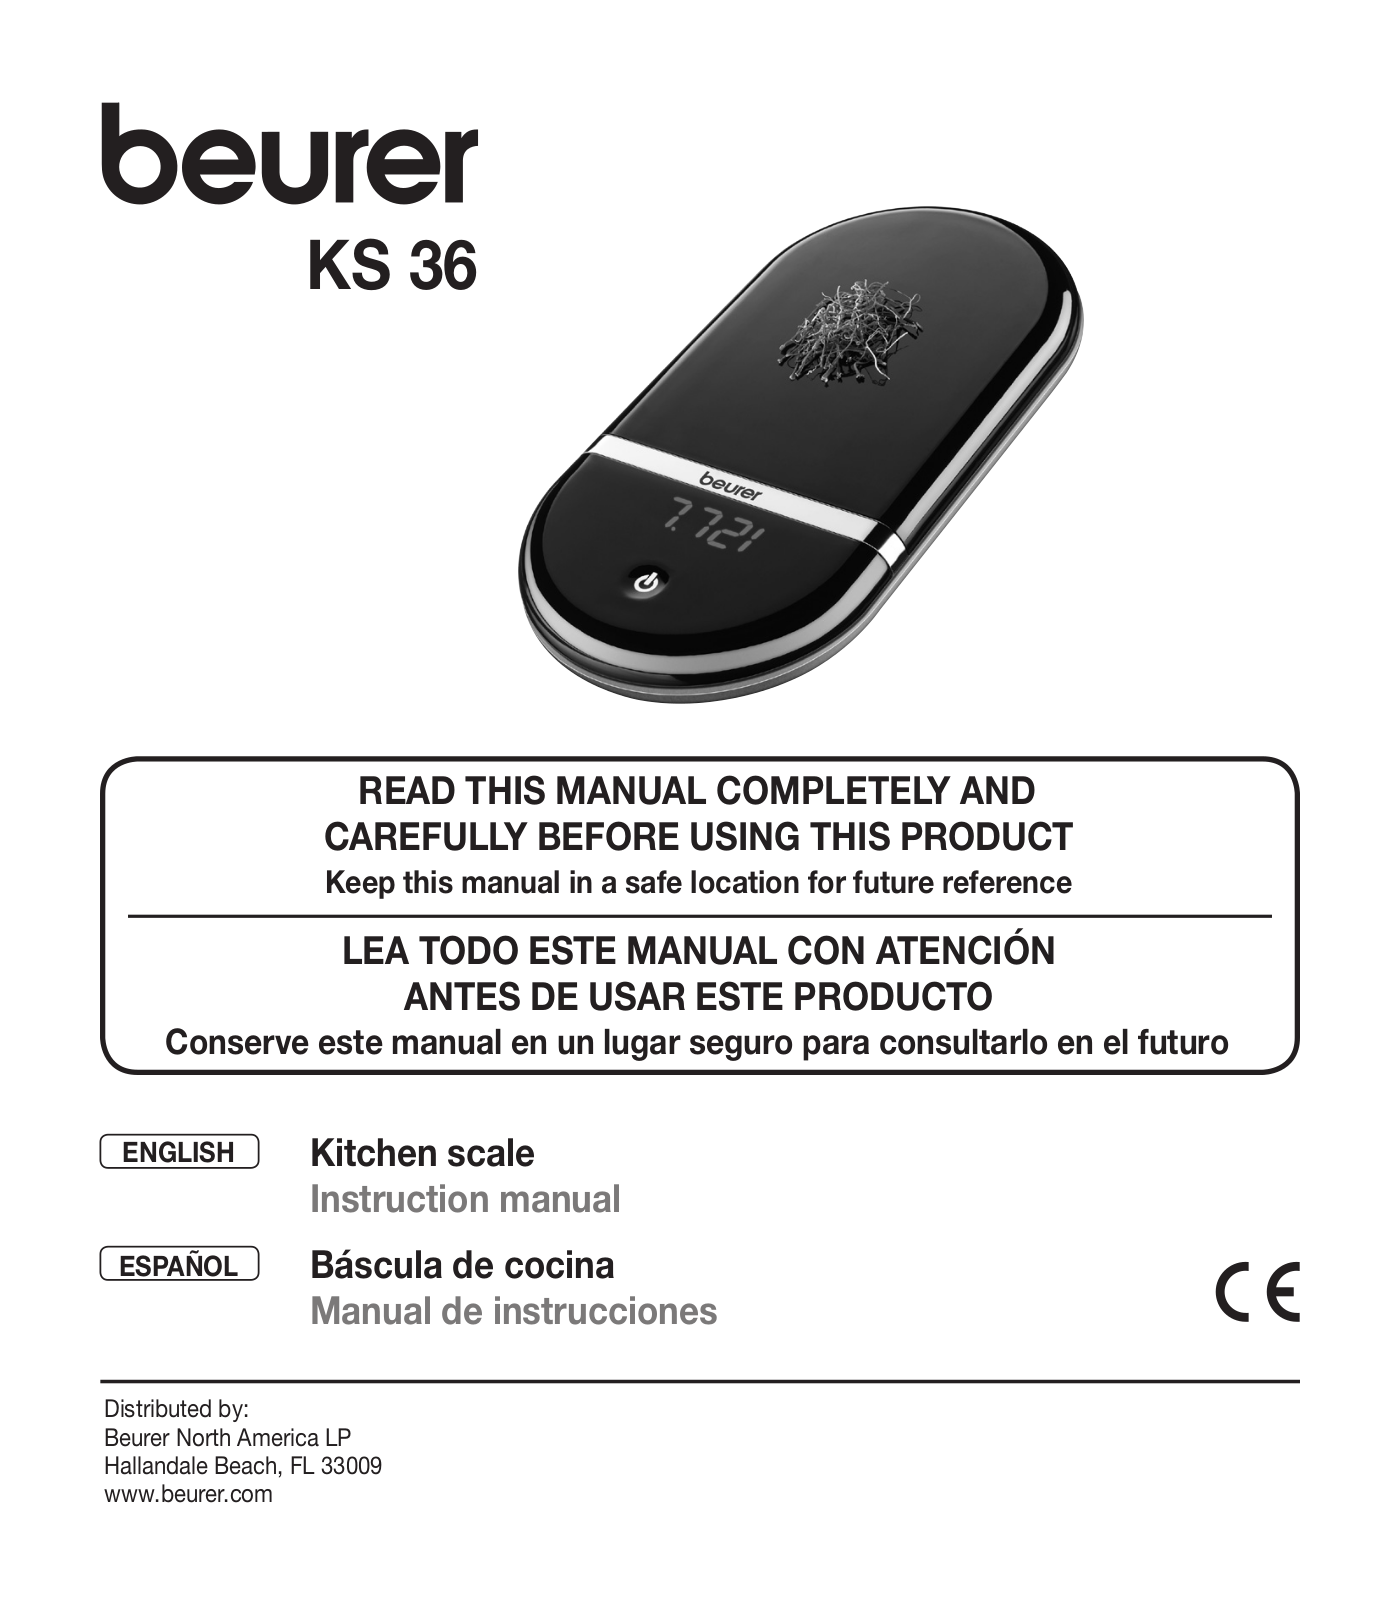 Beurer KS 36 Instruction Manual